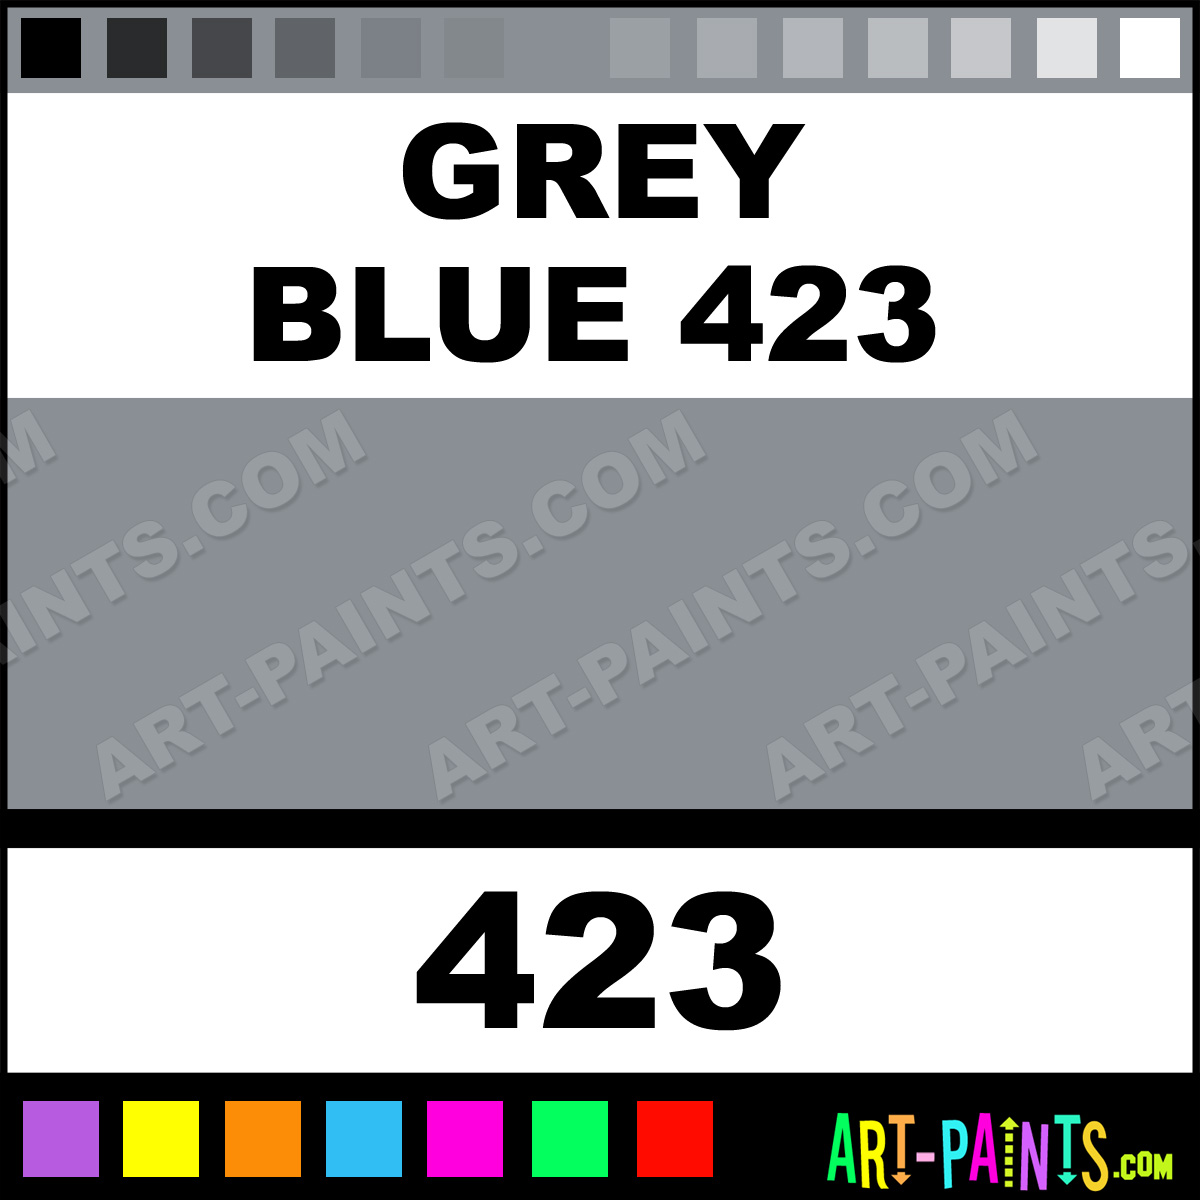 Grey-Blue-423-lg.jpg